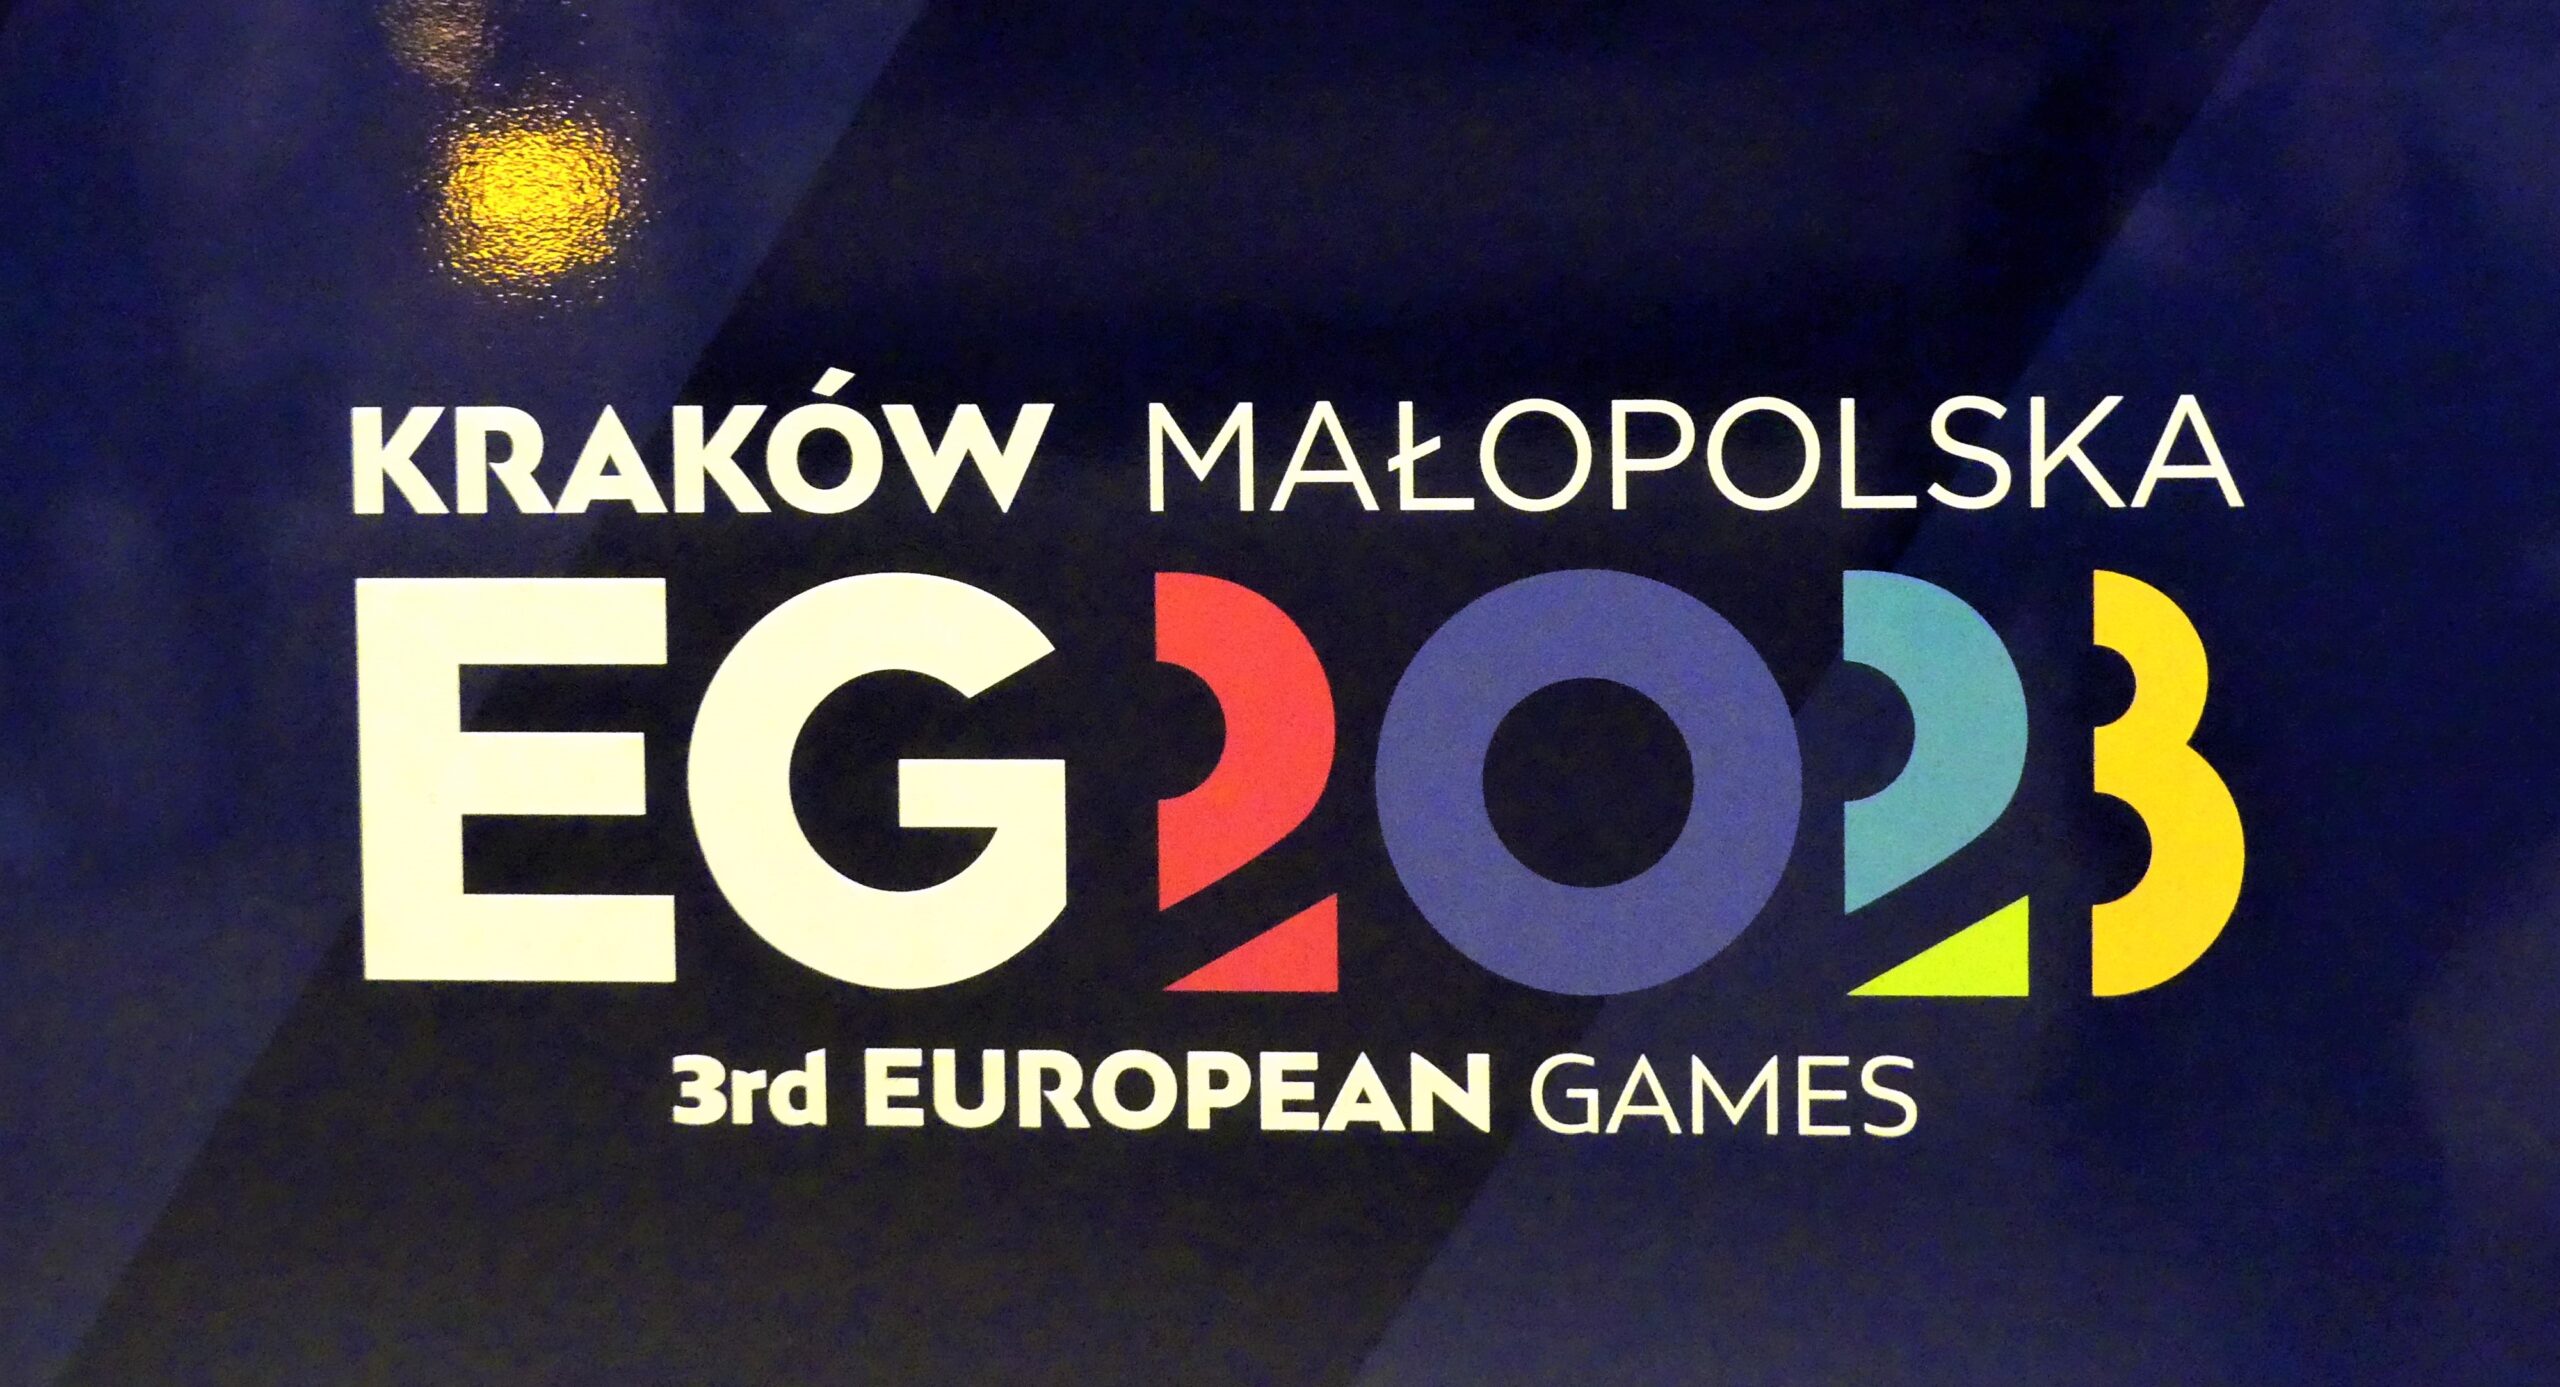 Rosjanom i Białorusinom zakazano udziału w Igrzyskach Europejskich w Polsce wbrew rekomendacjom Międzynarodowego Komitetu Olimpijskiego